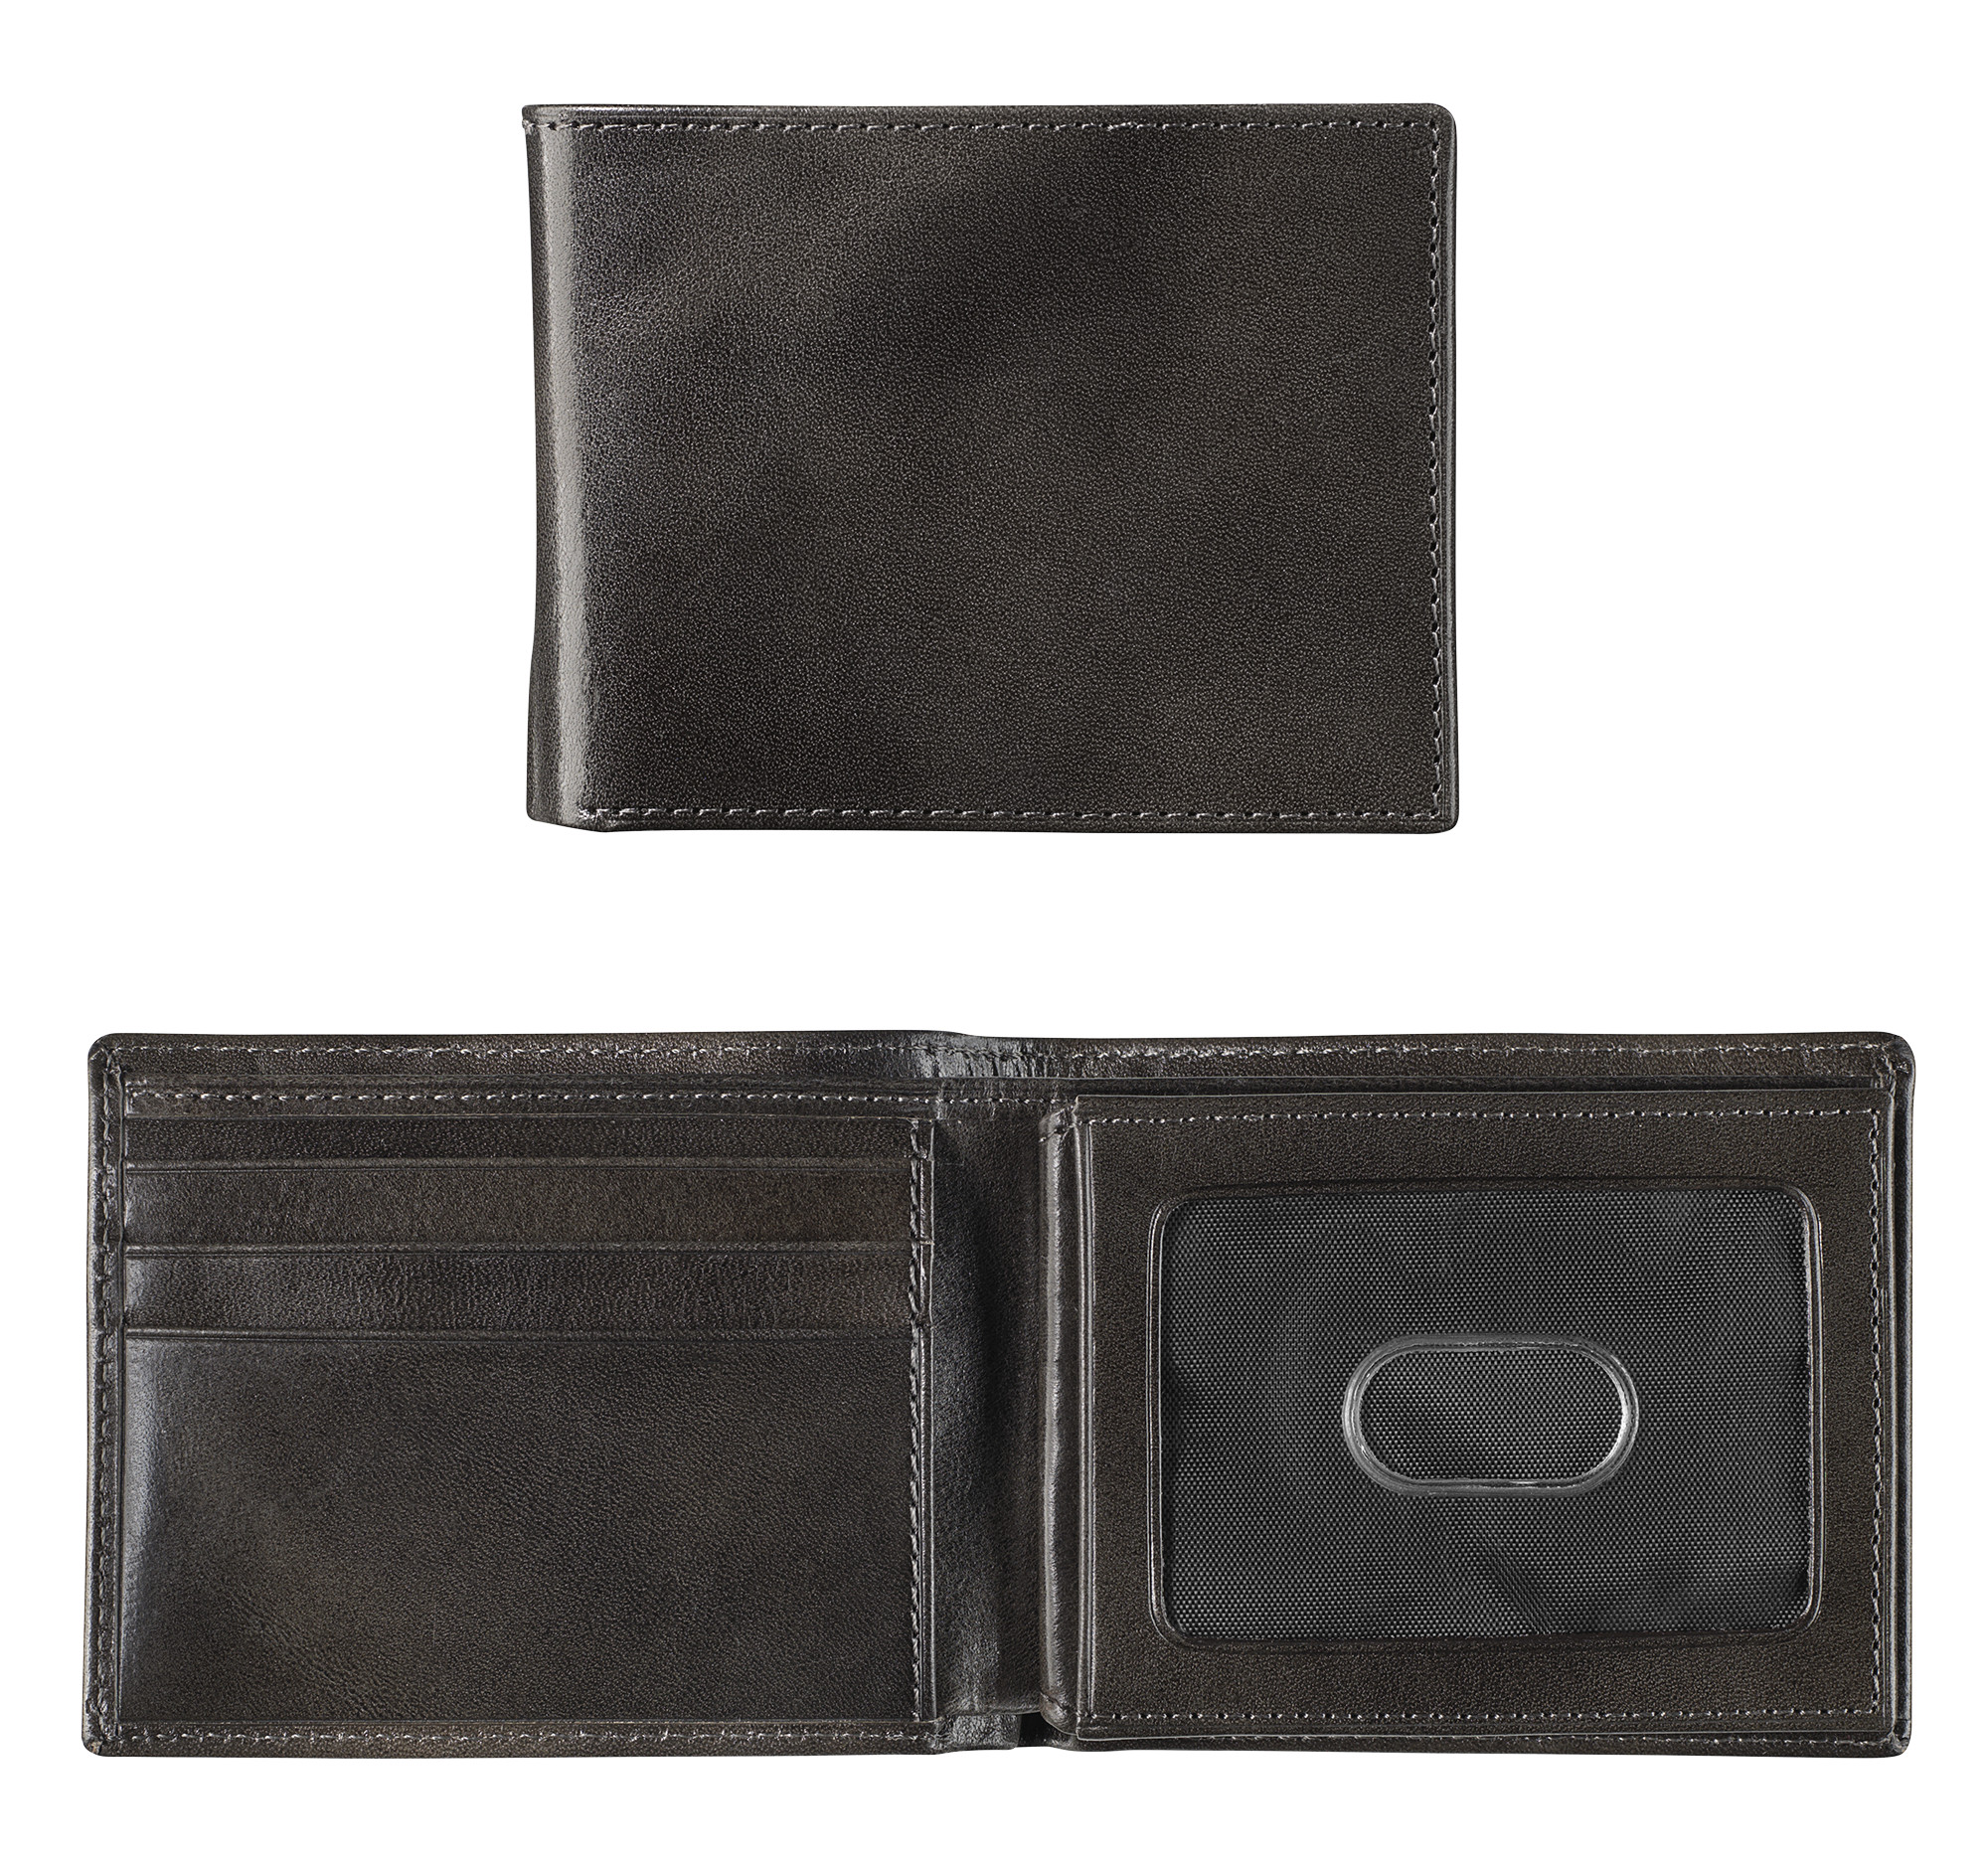 Johnston & Murphy Italian Leather Flip Billfold Wallet